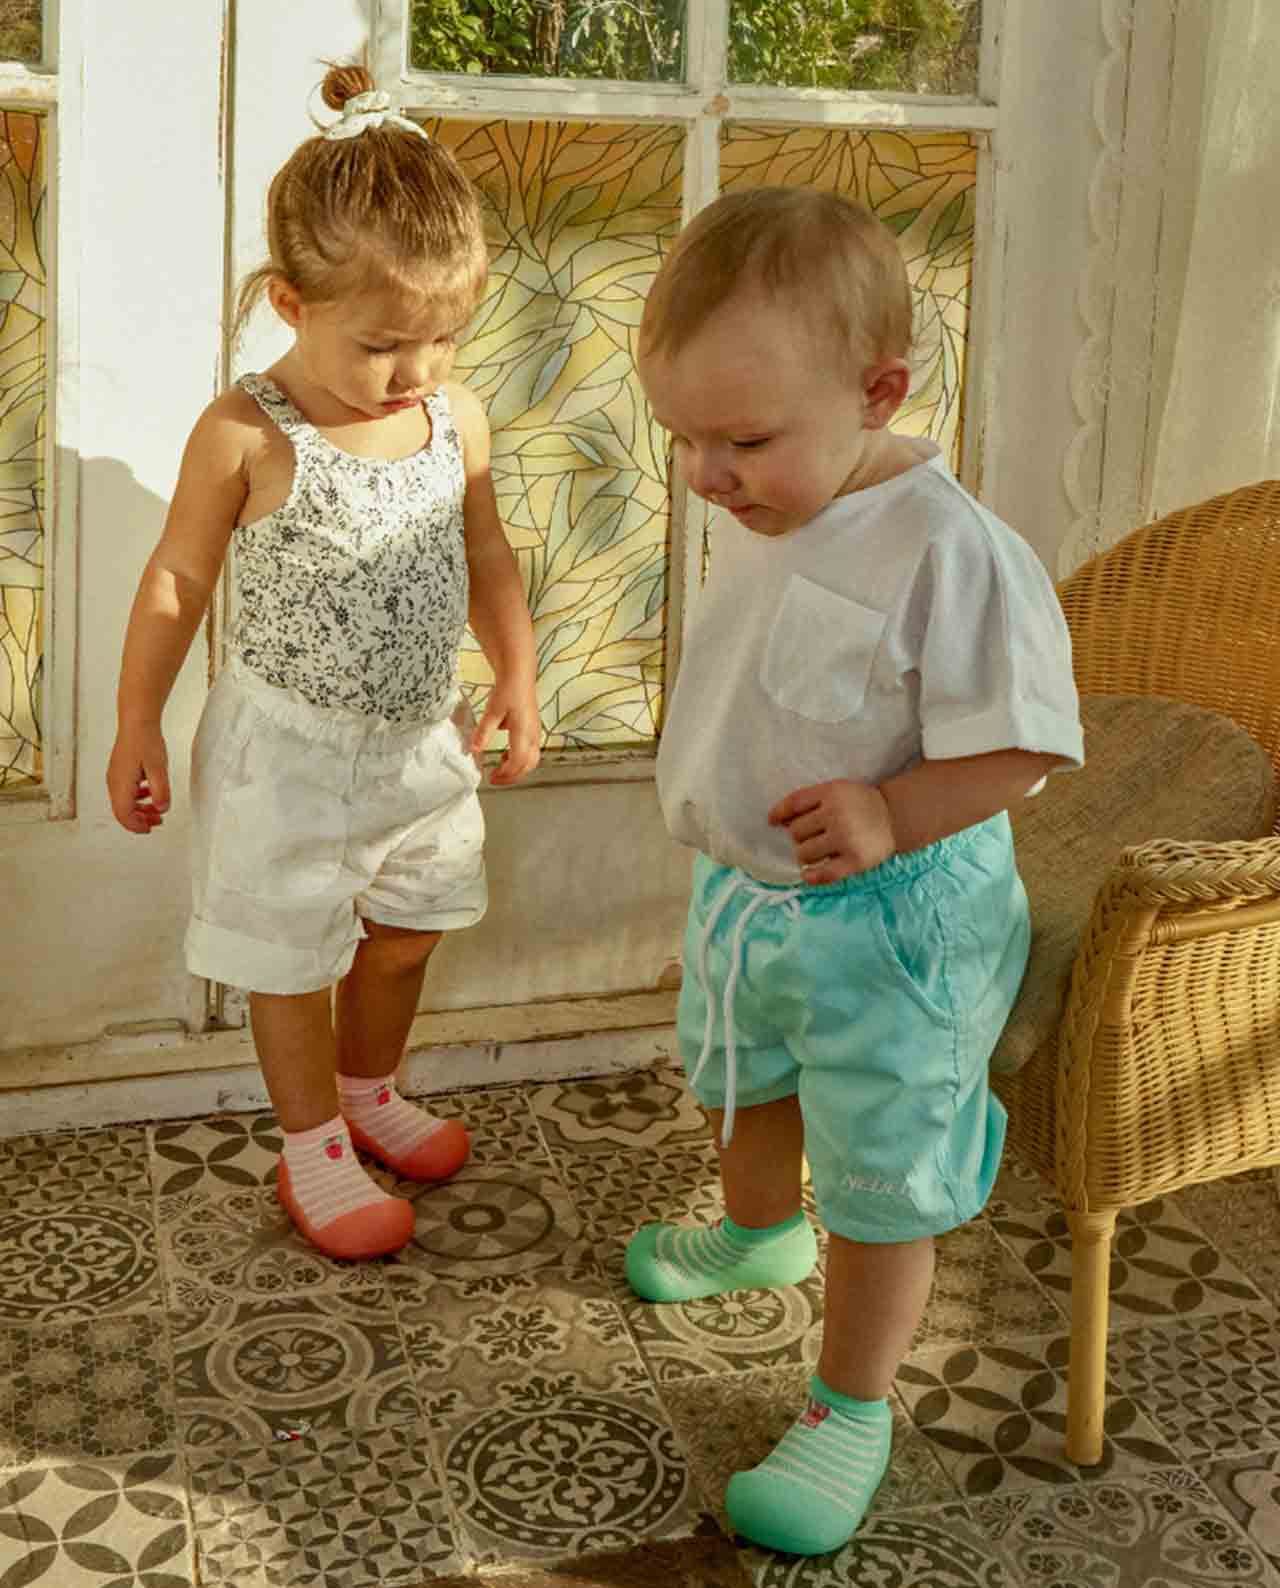 Calzado ergonómico para bebés Attipas Crab Mint - Summer - La Colmena